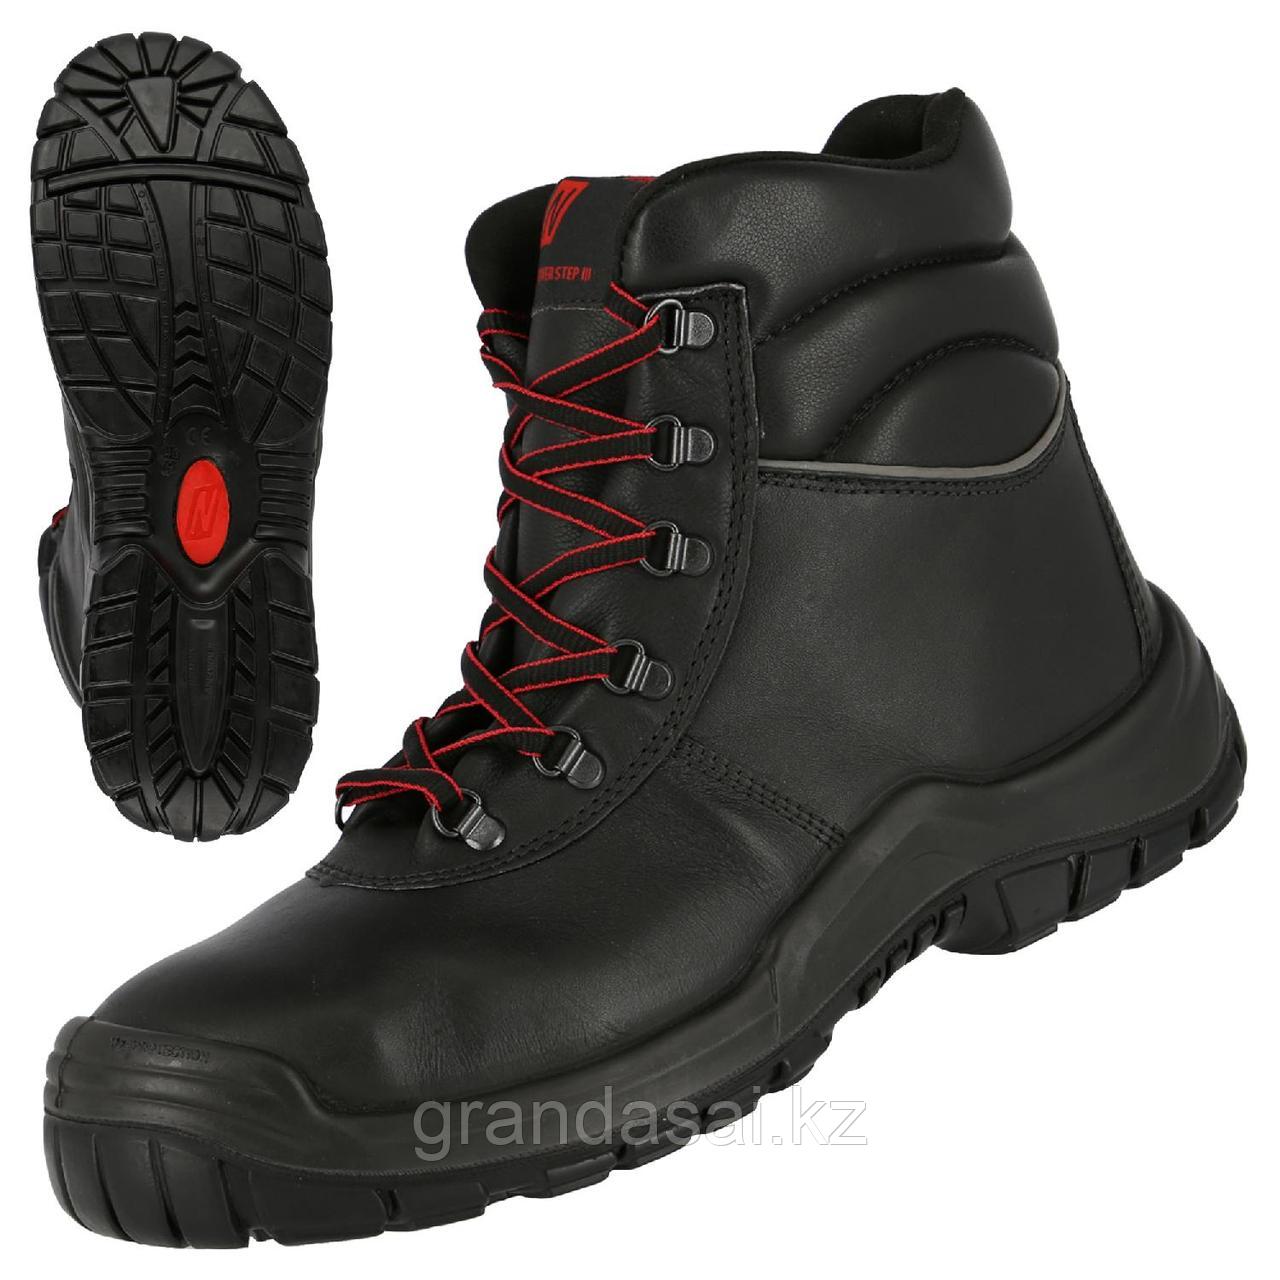 NITRAS 7213, защитные ботинки, класс защиты S3 HRO SRC, металлический подносок